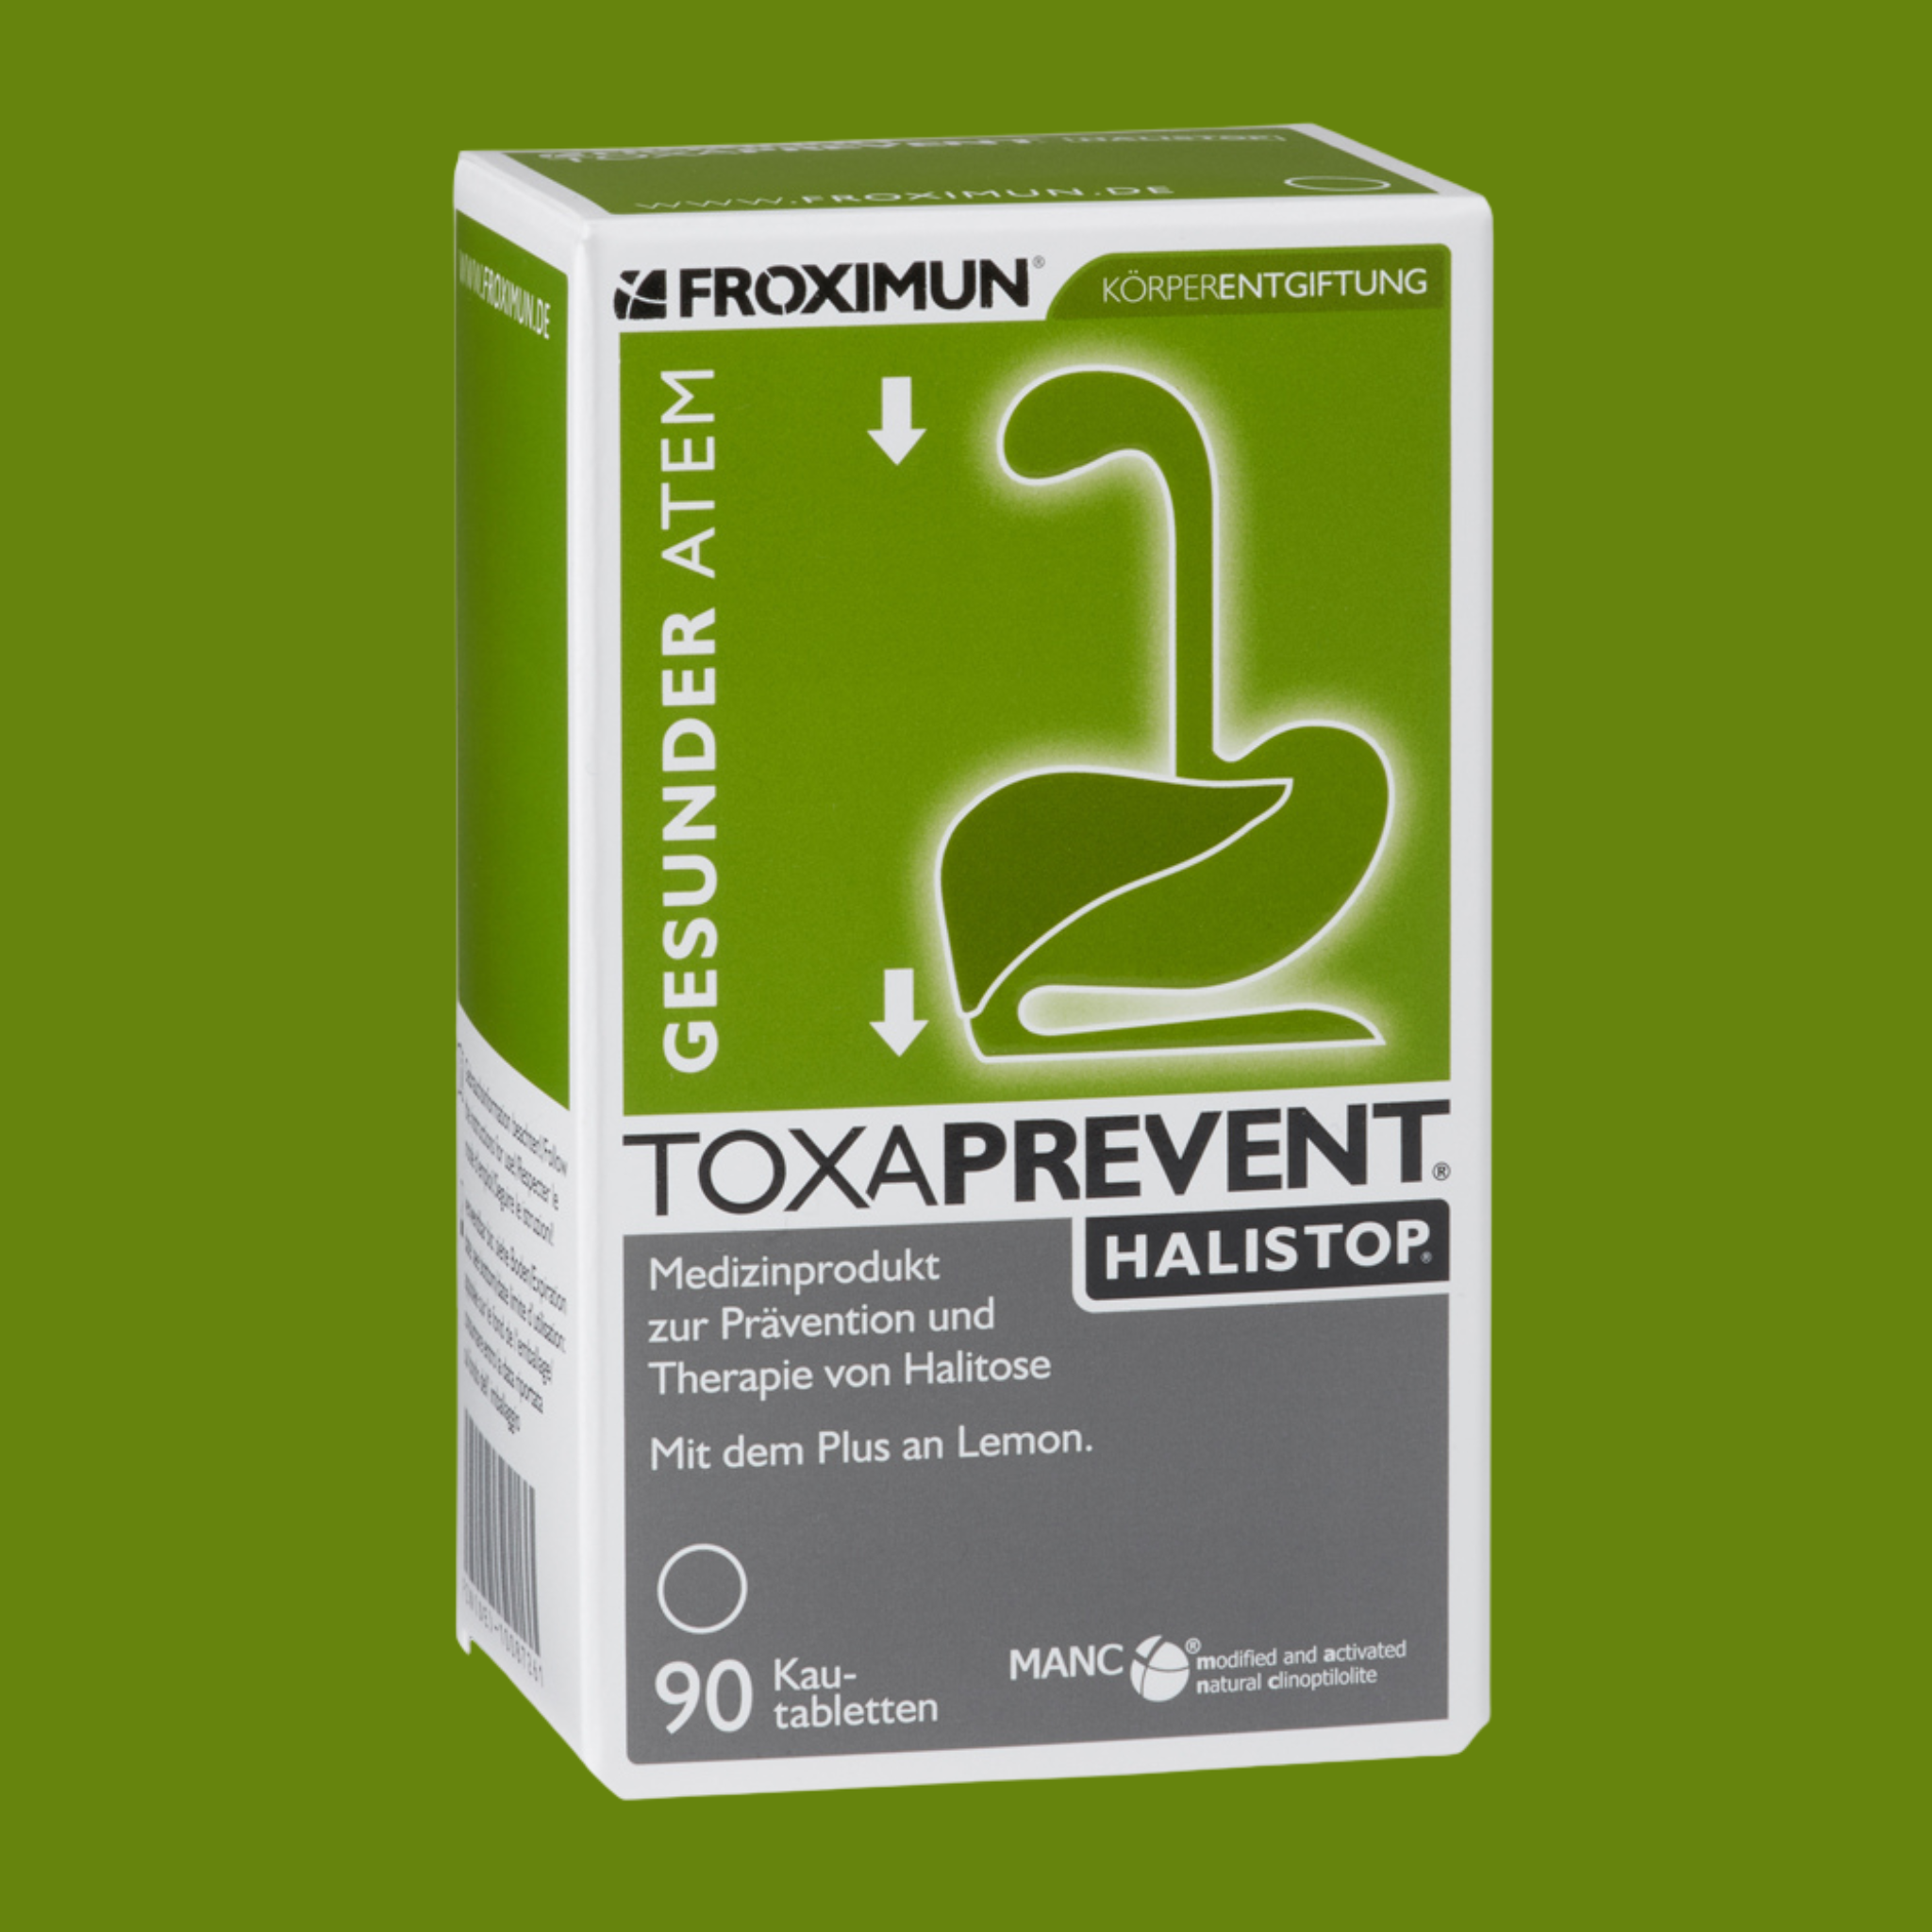 Toxaprevent® Halistop®, 90 comprimés à mâcher - Froximun AG - VitalAbo